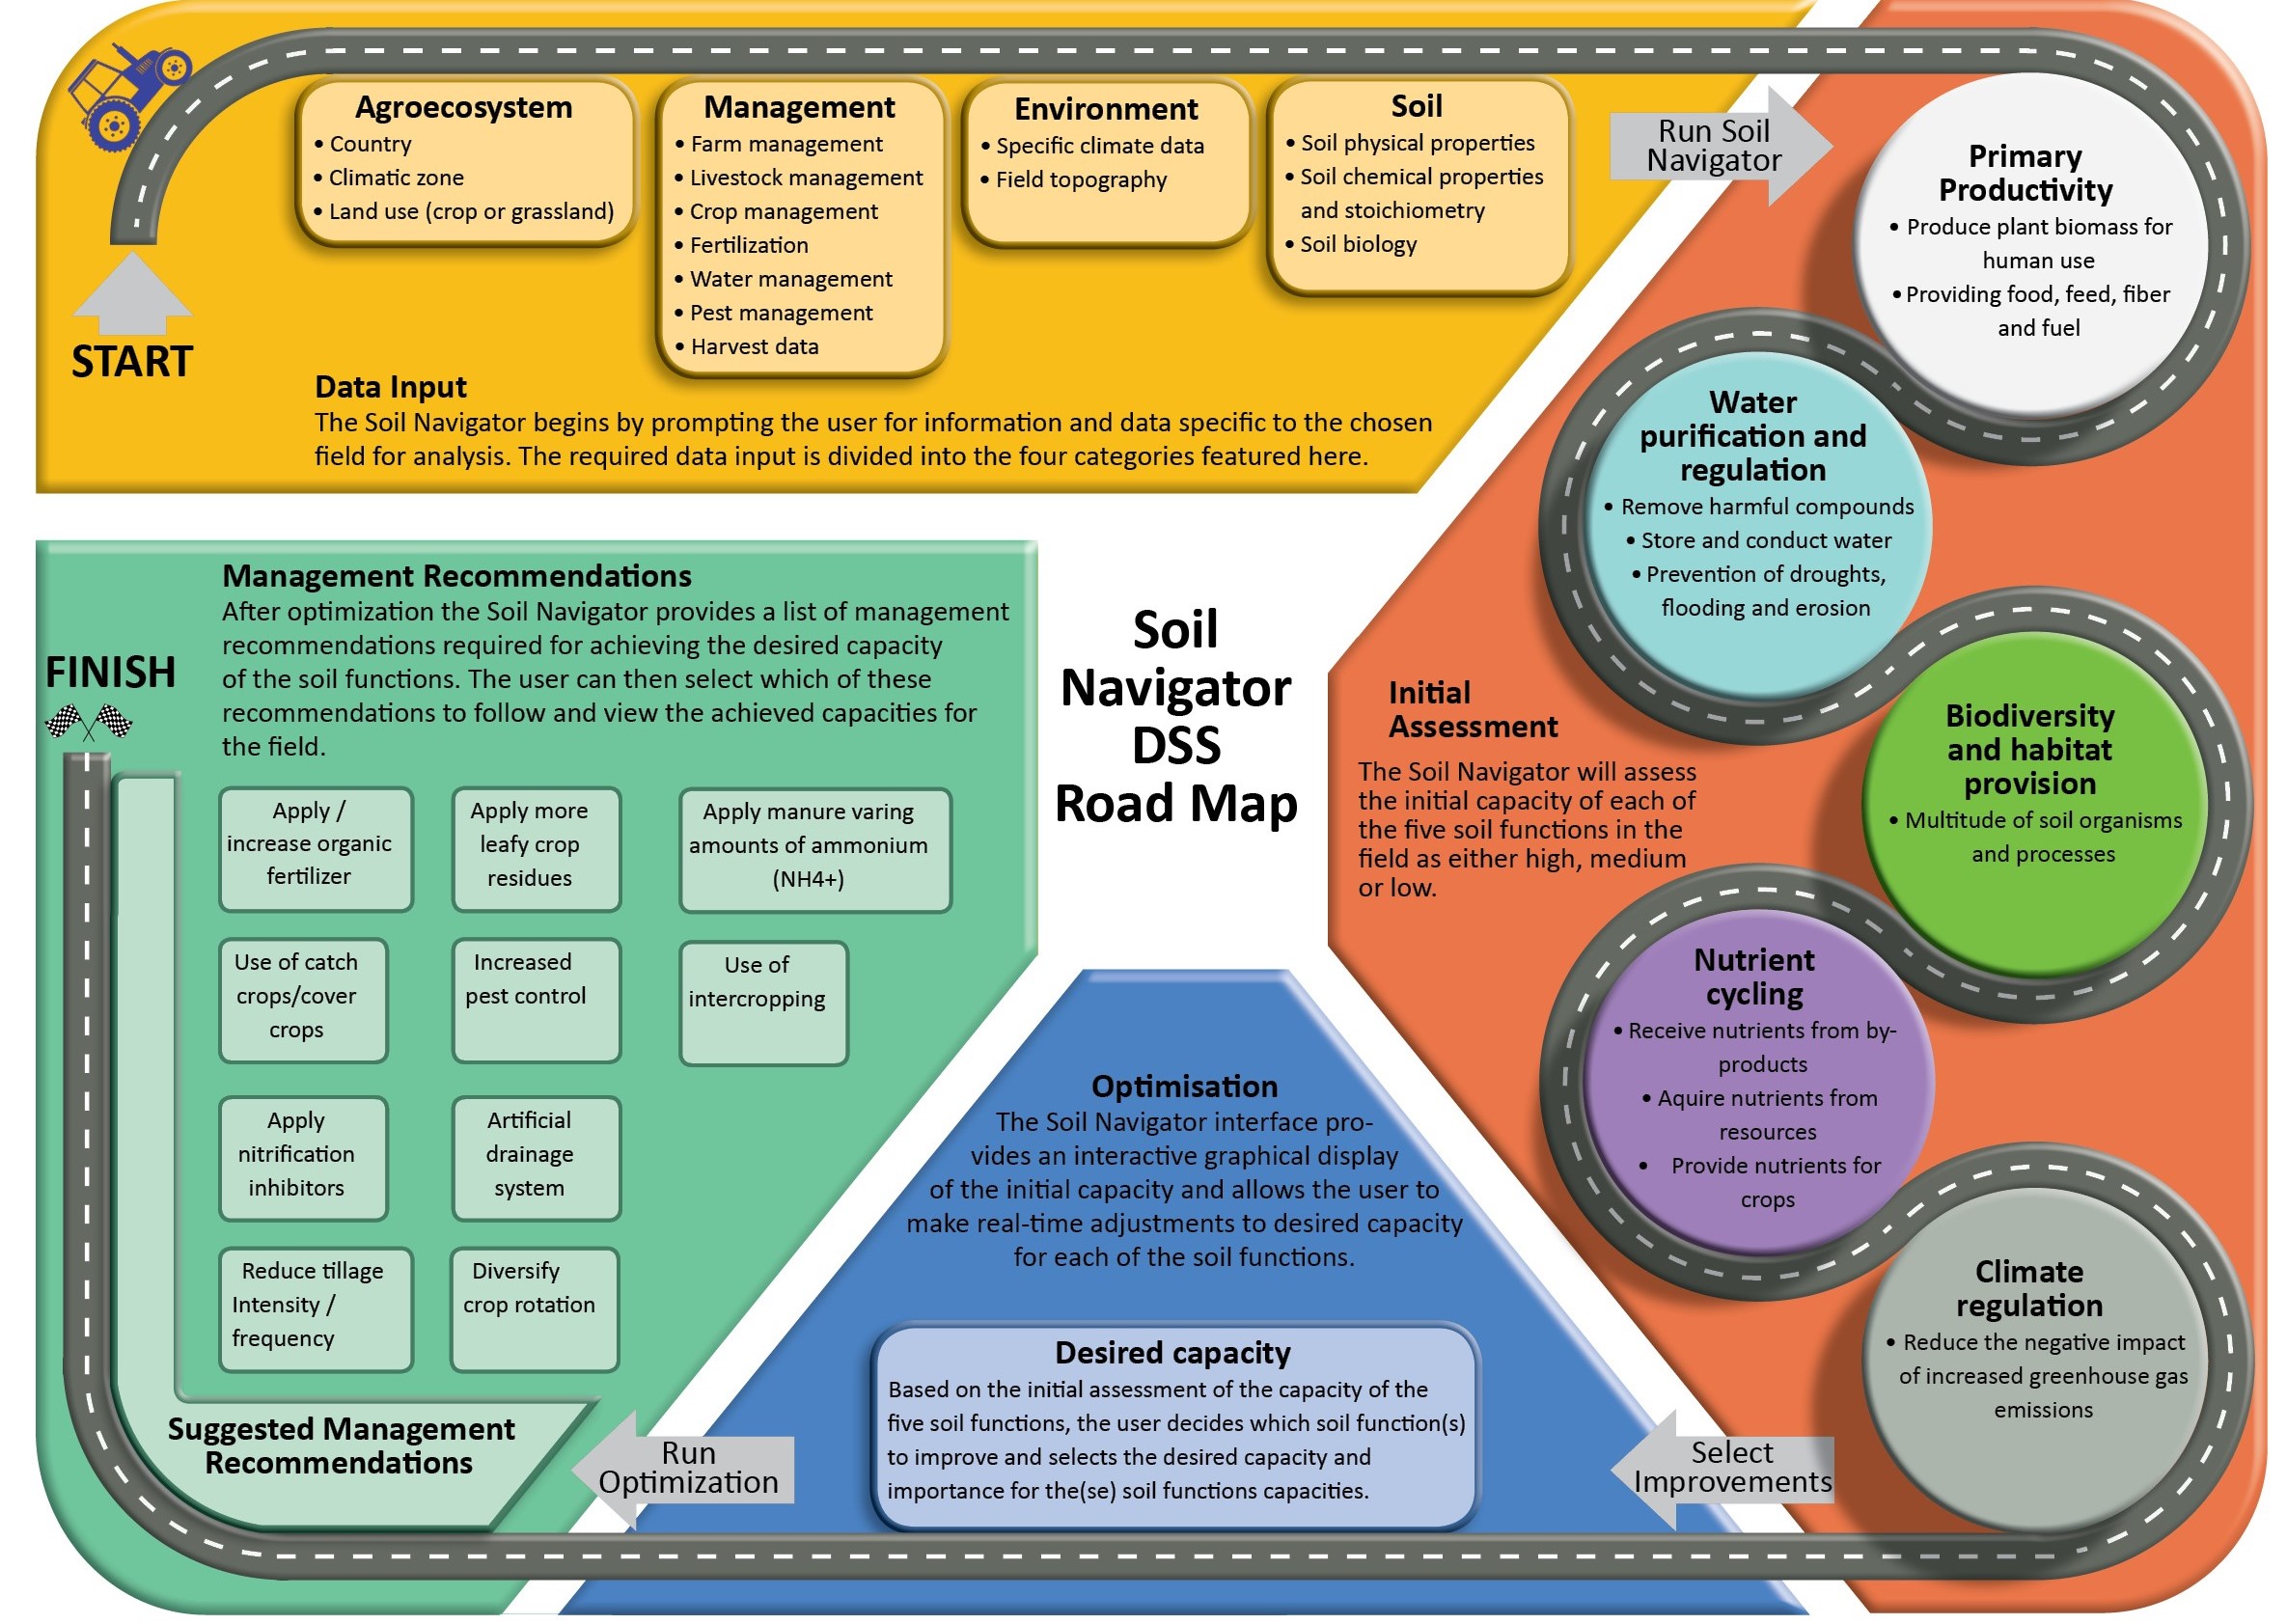 Soil Navigator roadmap infographic